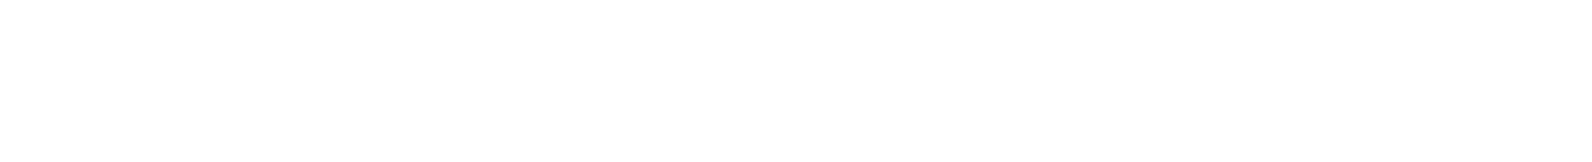 Ford Otosan
 logo grand pour les fonds sombres (PNG transparent)